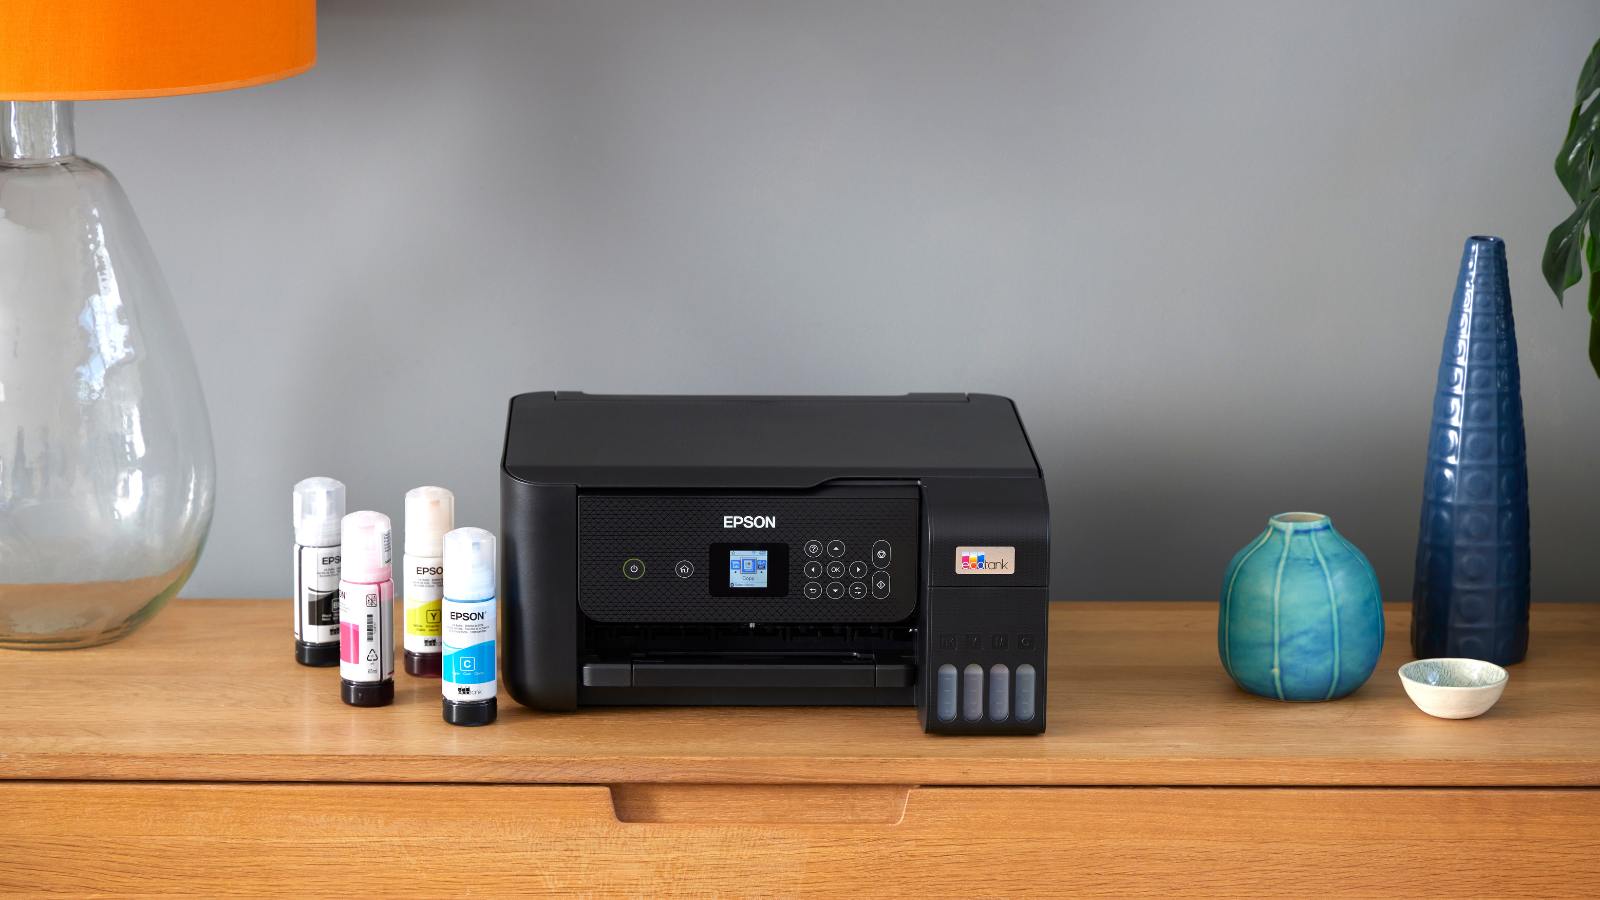 Je bekijkt nu Epson printer print niet zwart: Oplossingen en tips